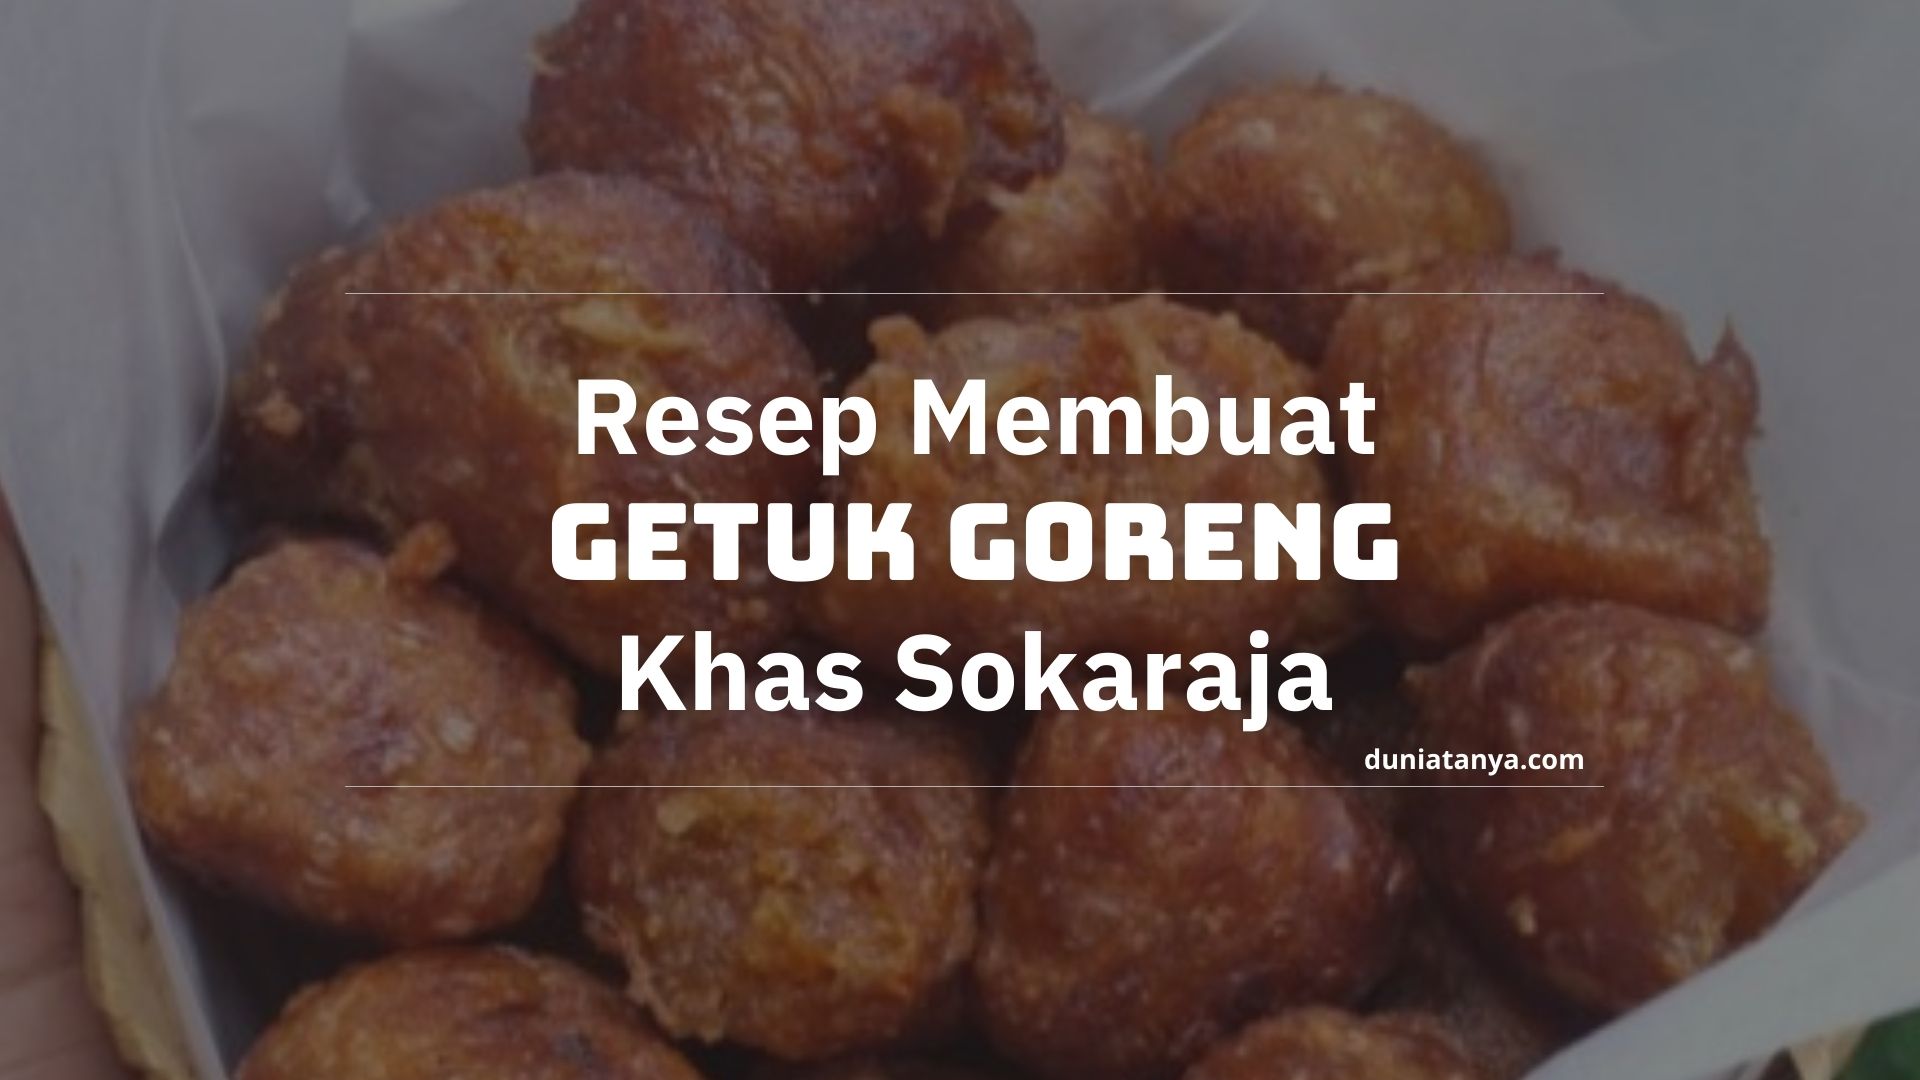 You are currently viewing Resep Membuat Getuk Goreng Khas Sokaraja